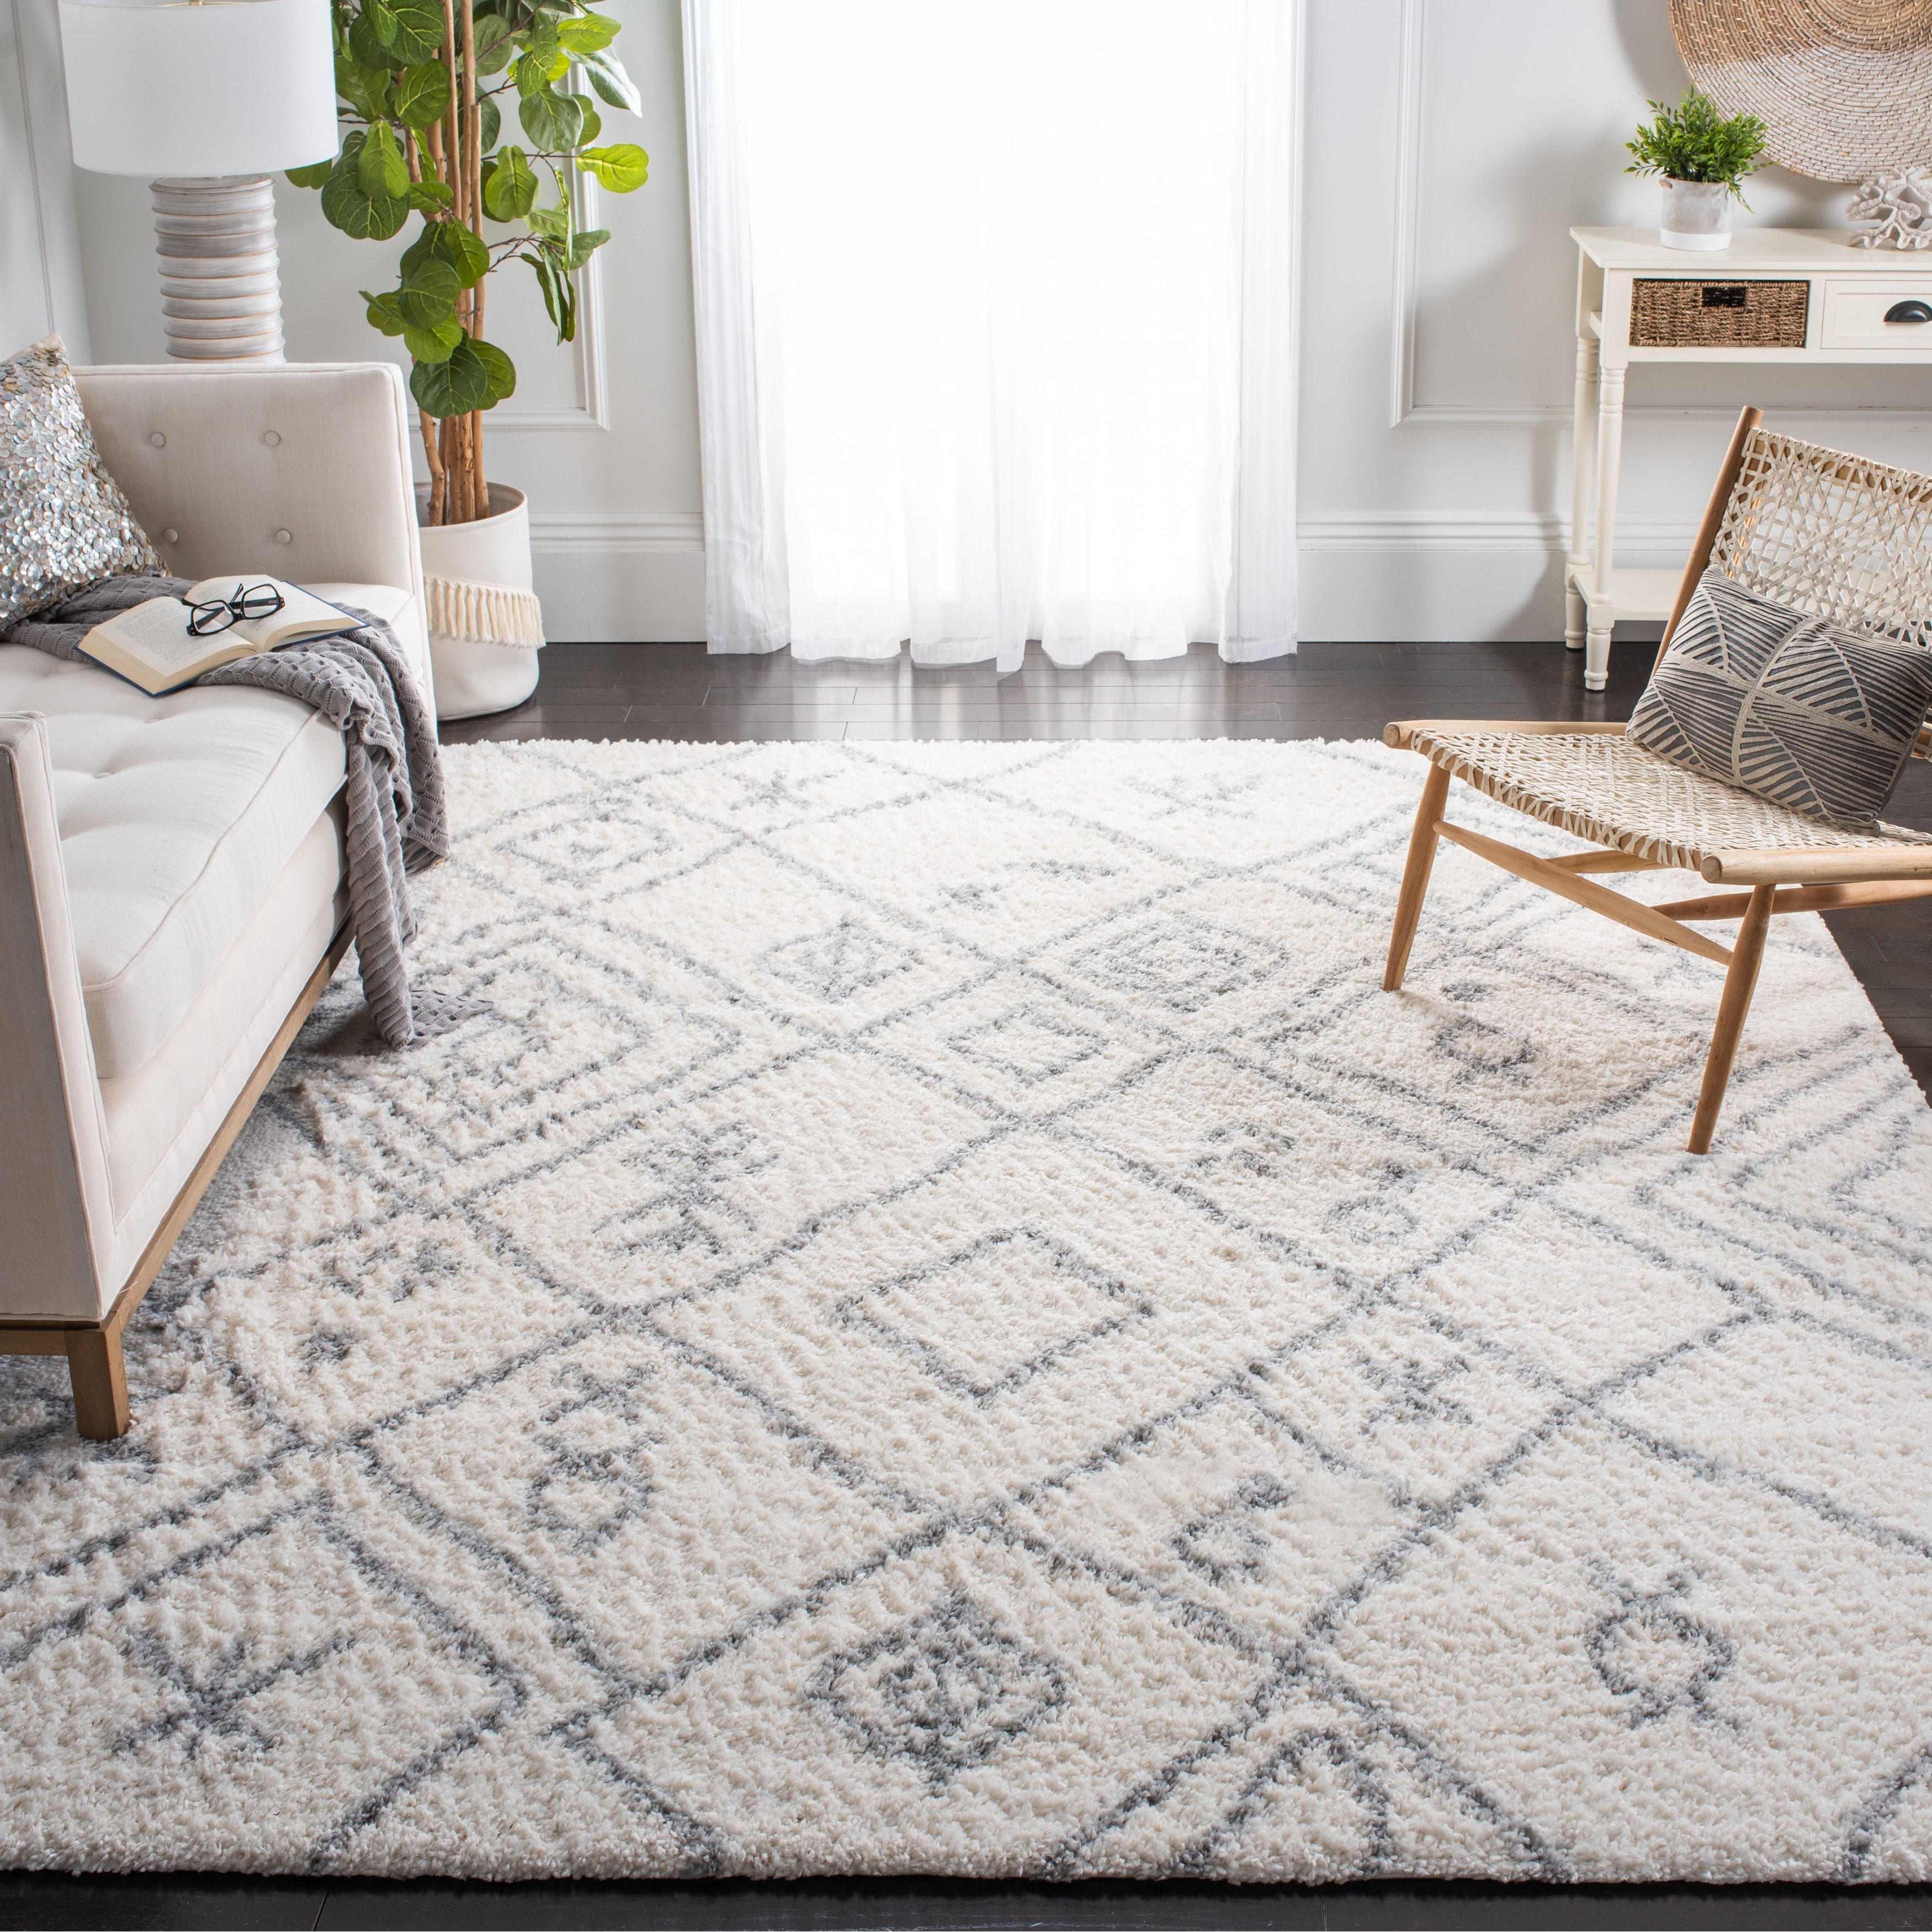 Modern Parma Rugs Living Room Carpet Non Slip Floor Mats Modern Corridor Runner 